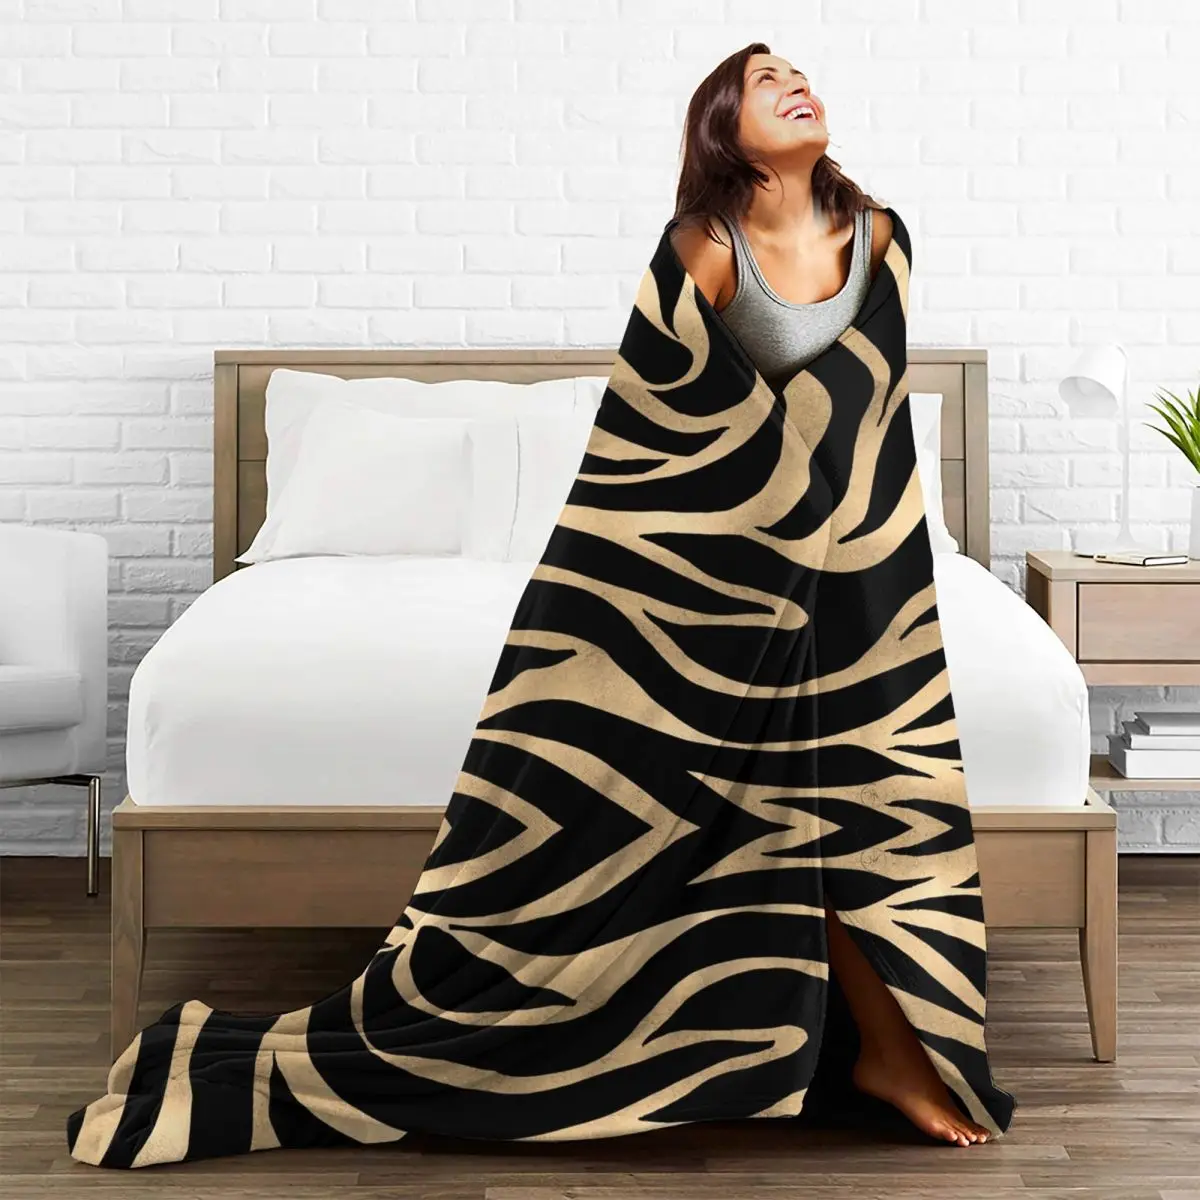 Армейский камуфляж, одеяла с принтом зебры, леопарда, тигра, текстура кожи животного, плюшевая новинка, мягкие одеяла для кровати-покрывала 2